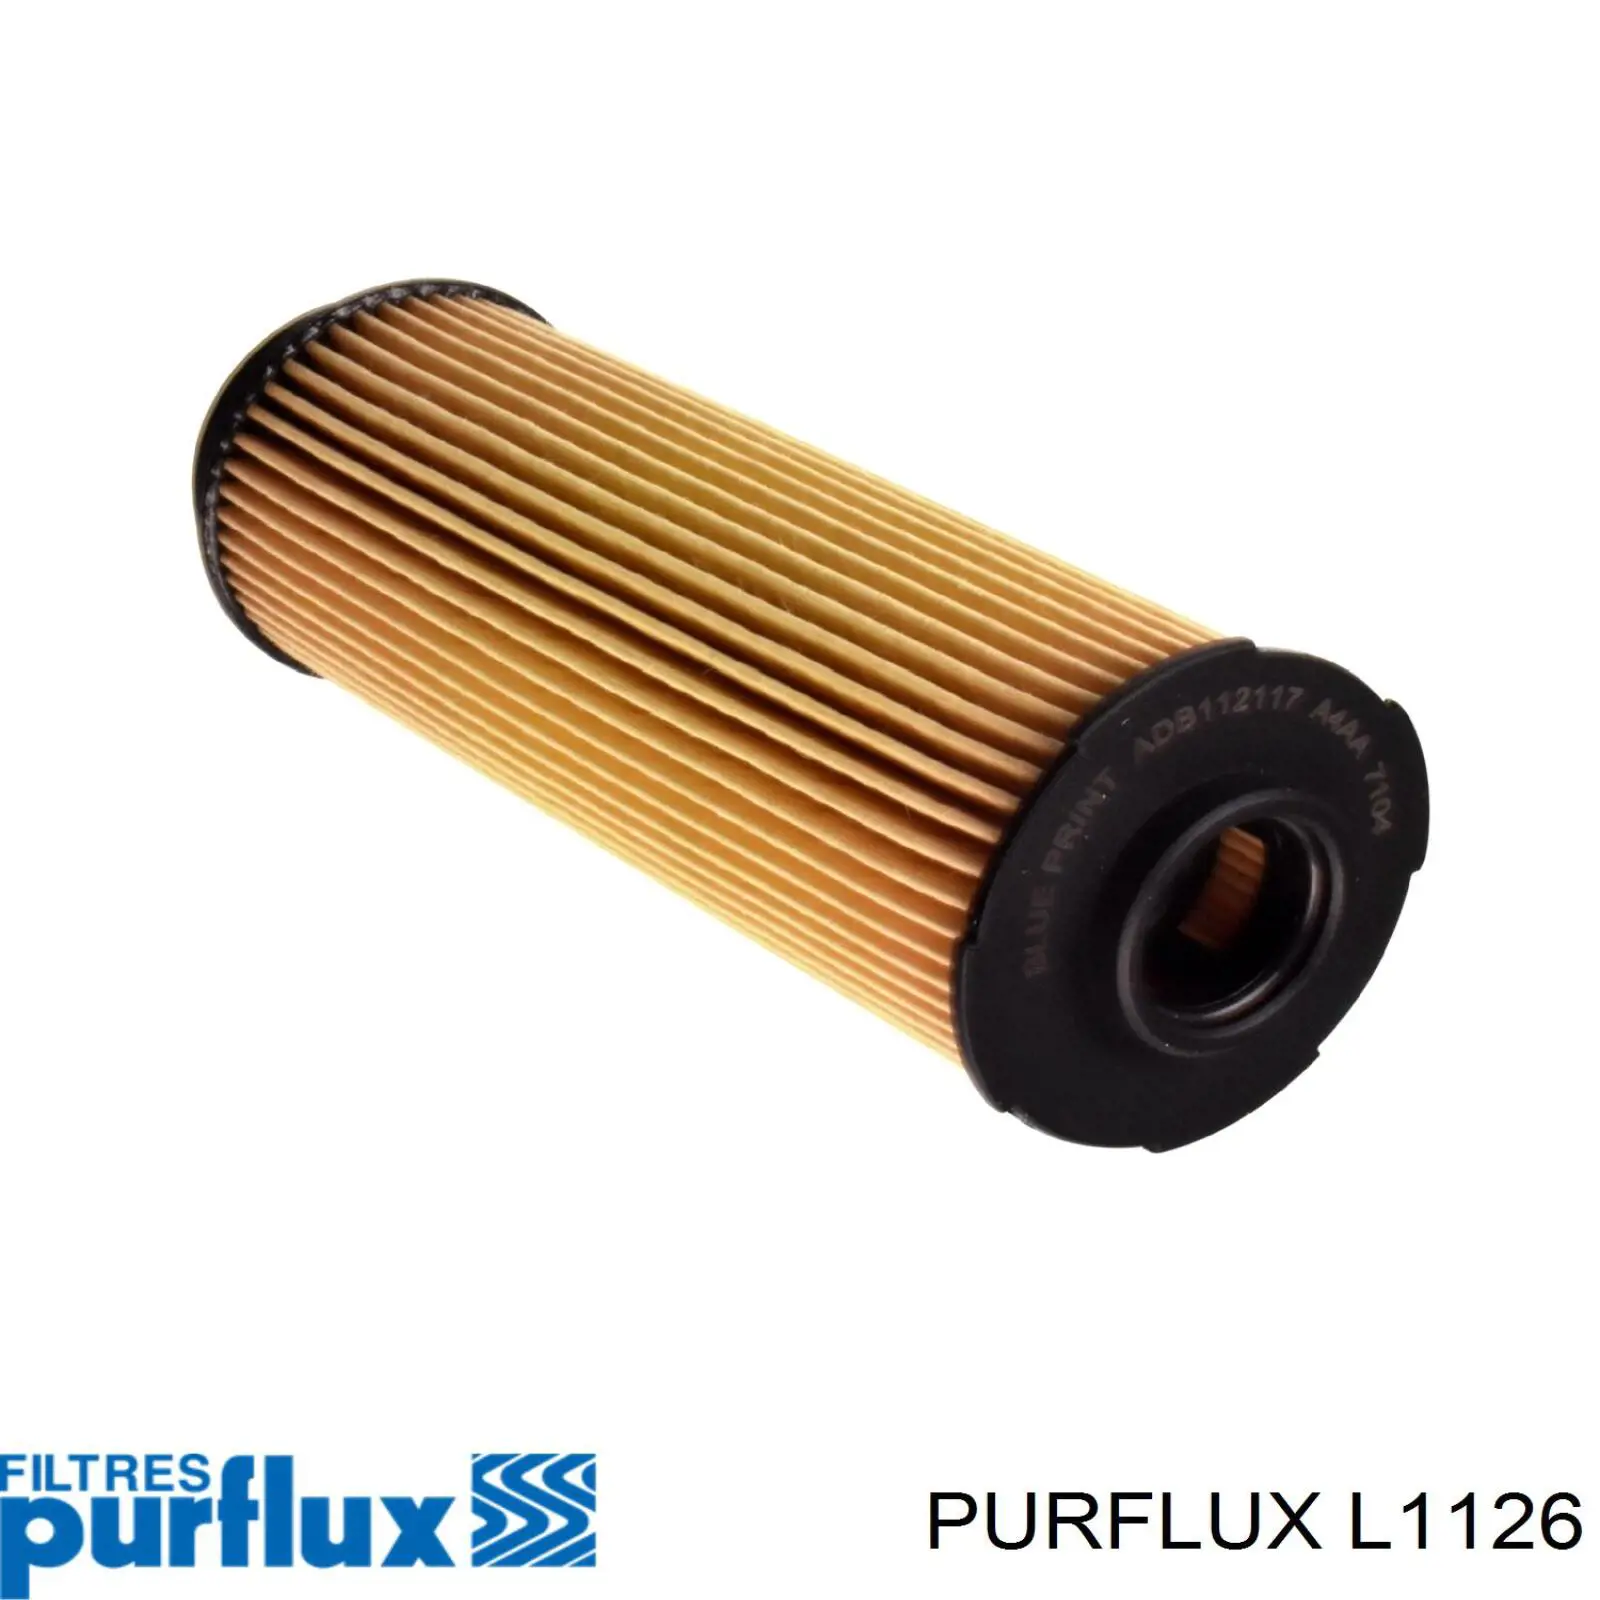 Filtro de aceite L1126 Purflux